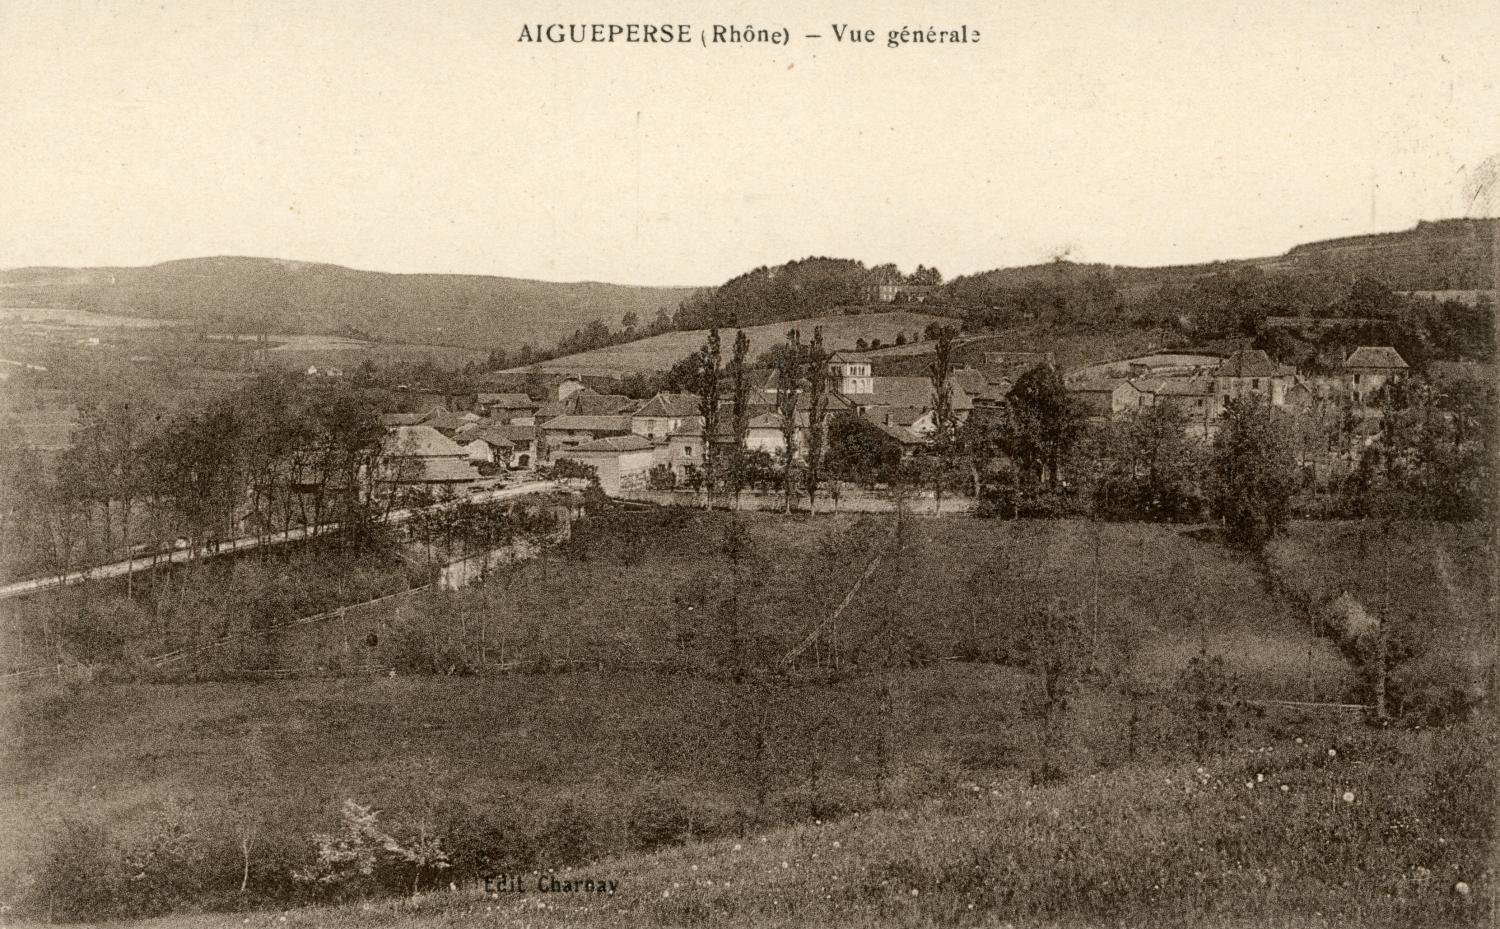 Aigueperse (Rhône). - Vue générale